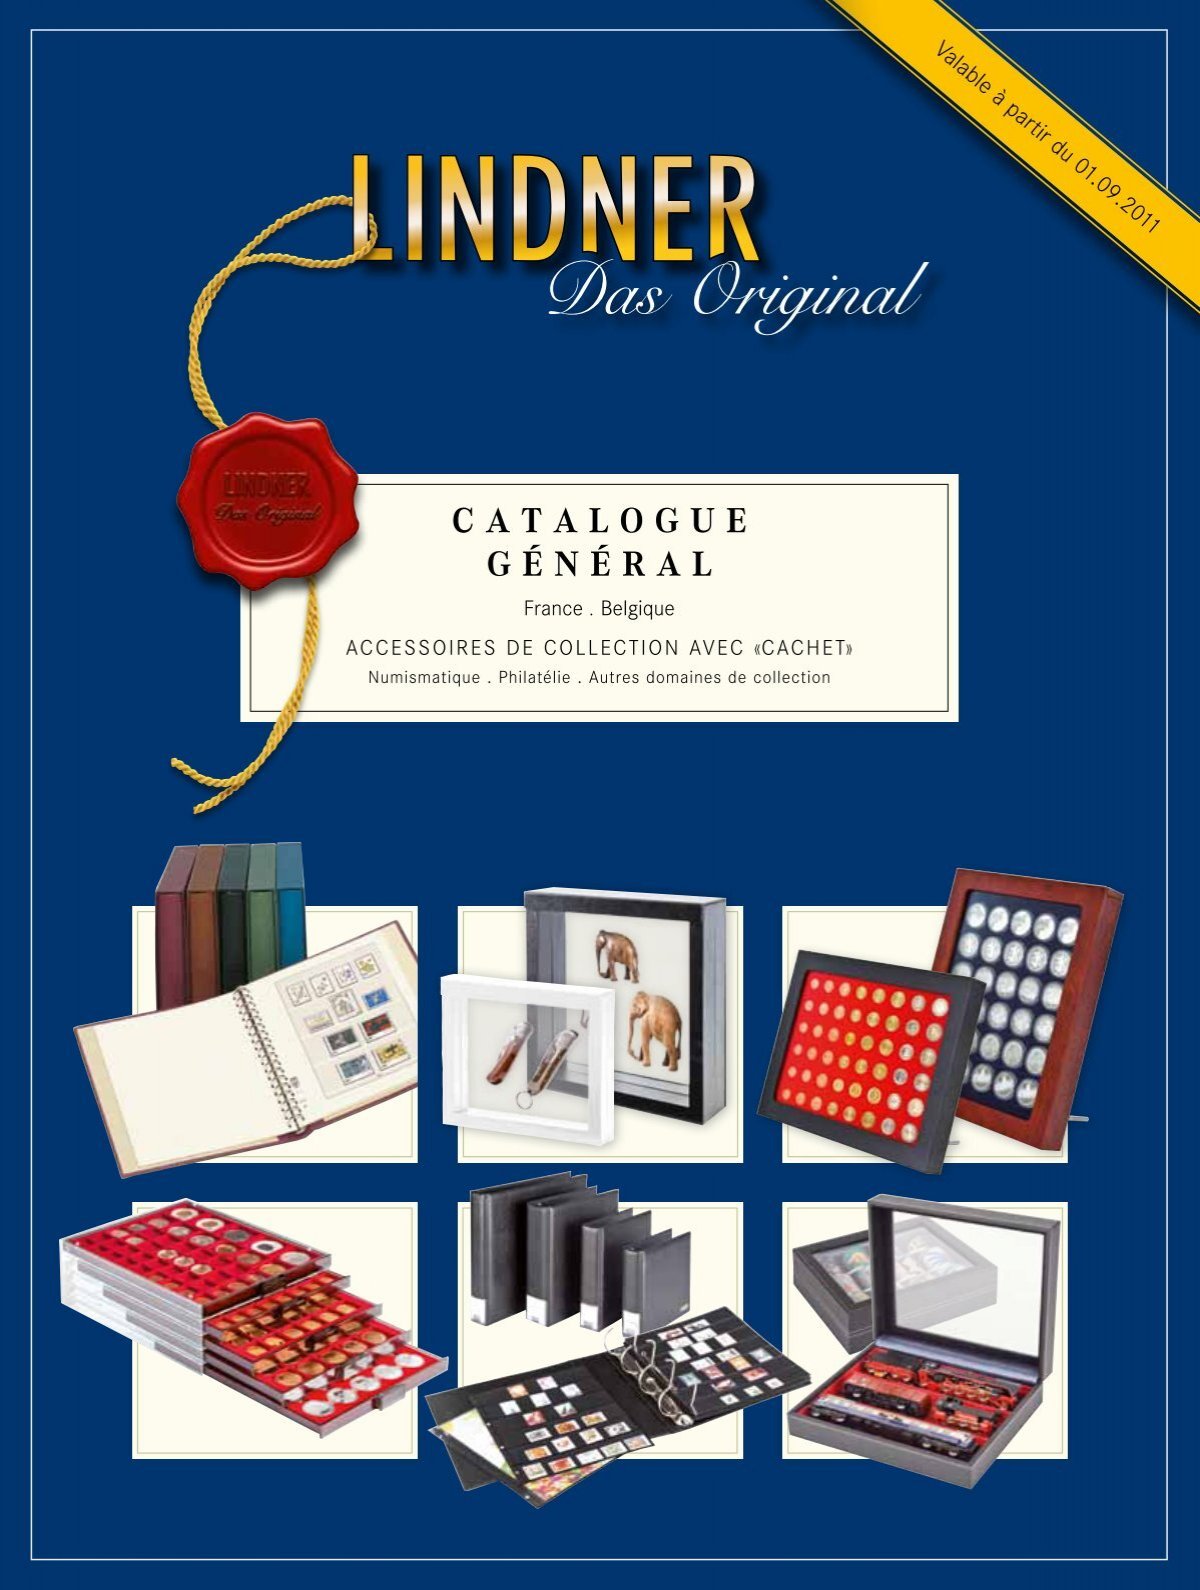 Grande valise numismatique - Lindner Original